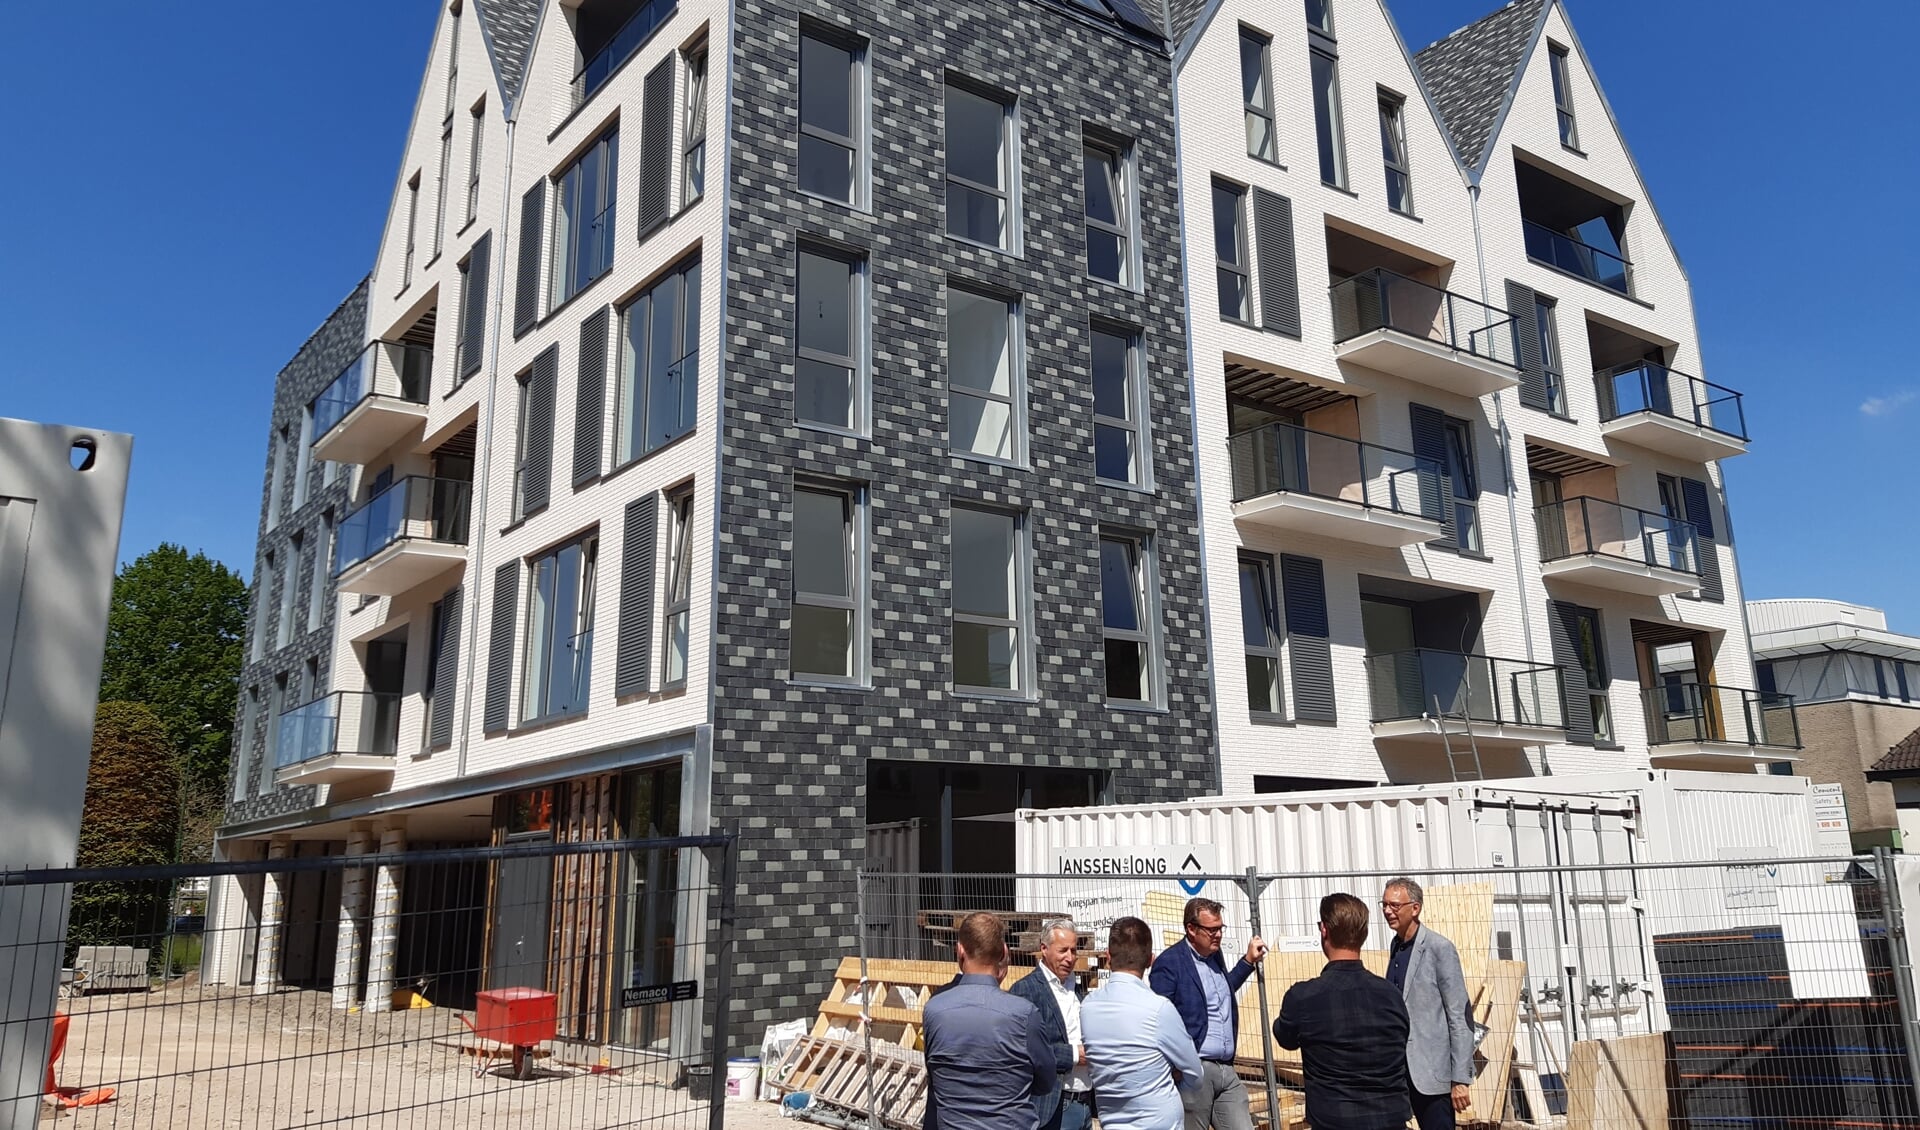 Het appartementencomplex 'Hofstede' aand e Hamersveldseweg is maandag 31 mei officieel opgeleverd.